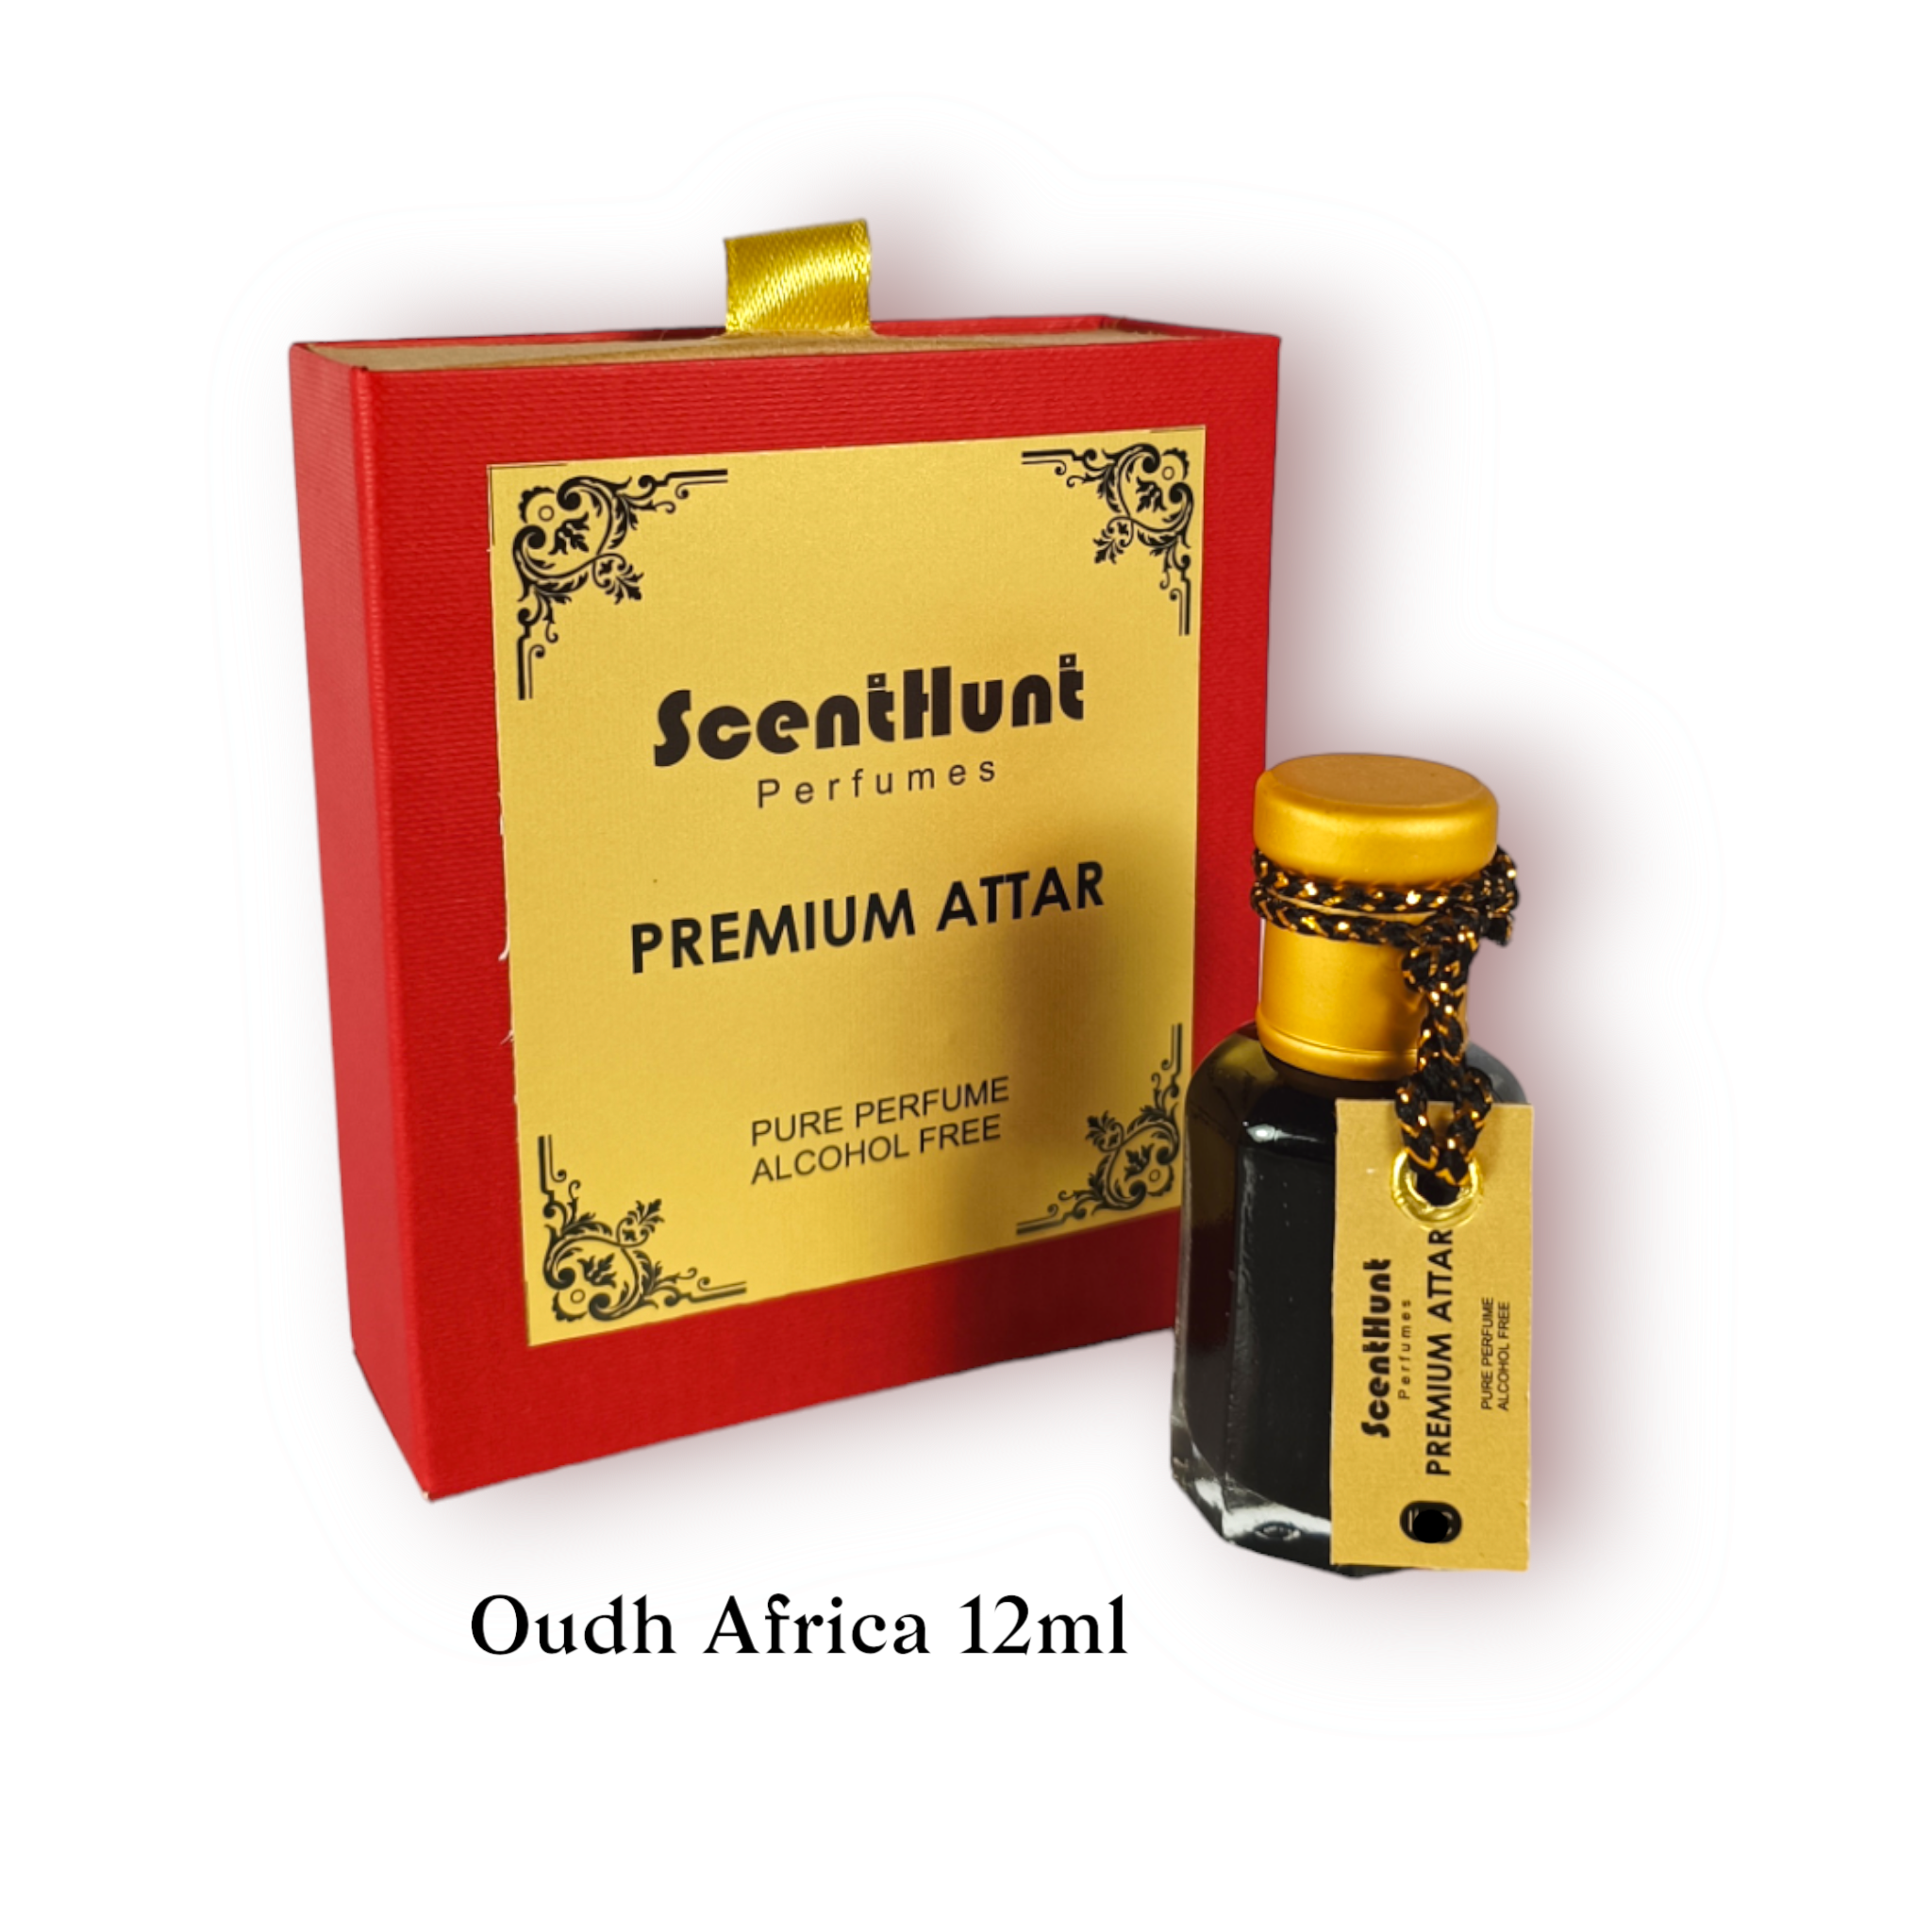 Scent Hunt Perfumes - Oudh Africa Premium Attar Oil 12ml